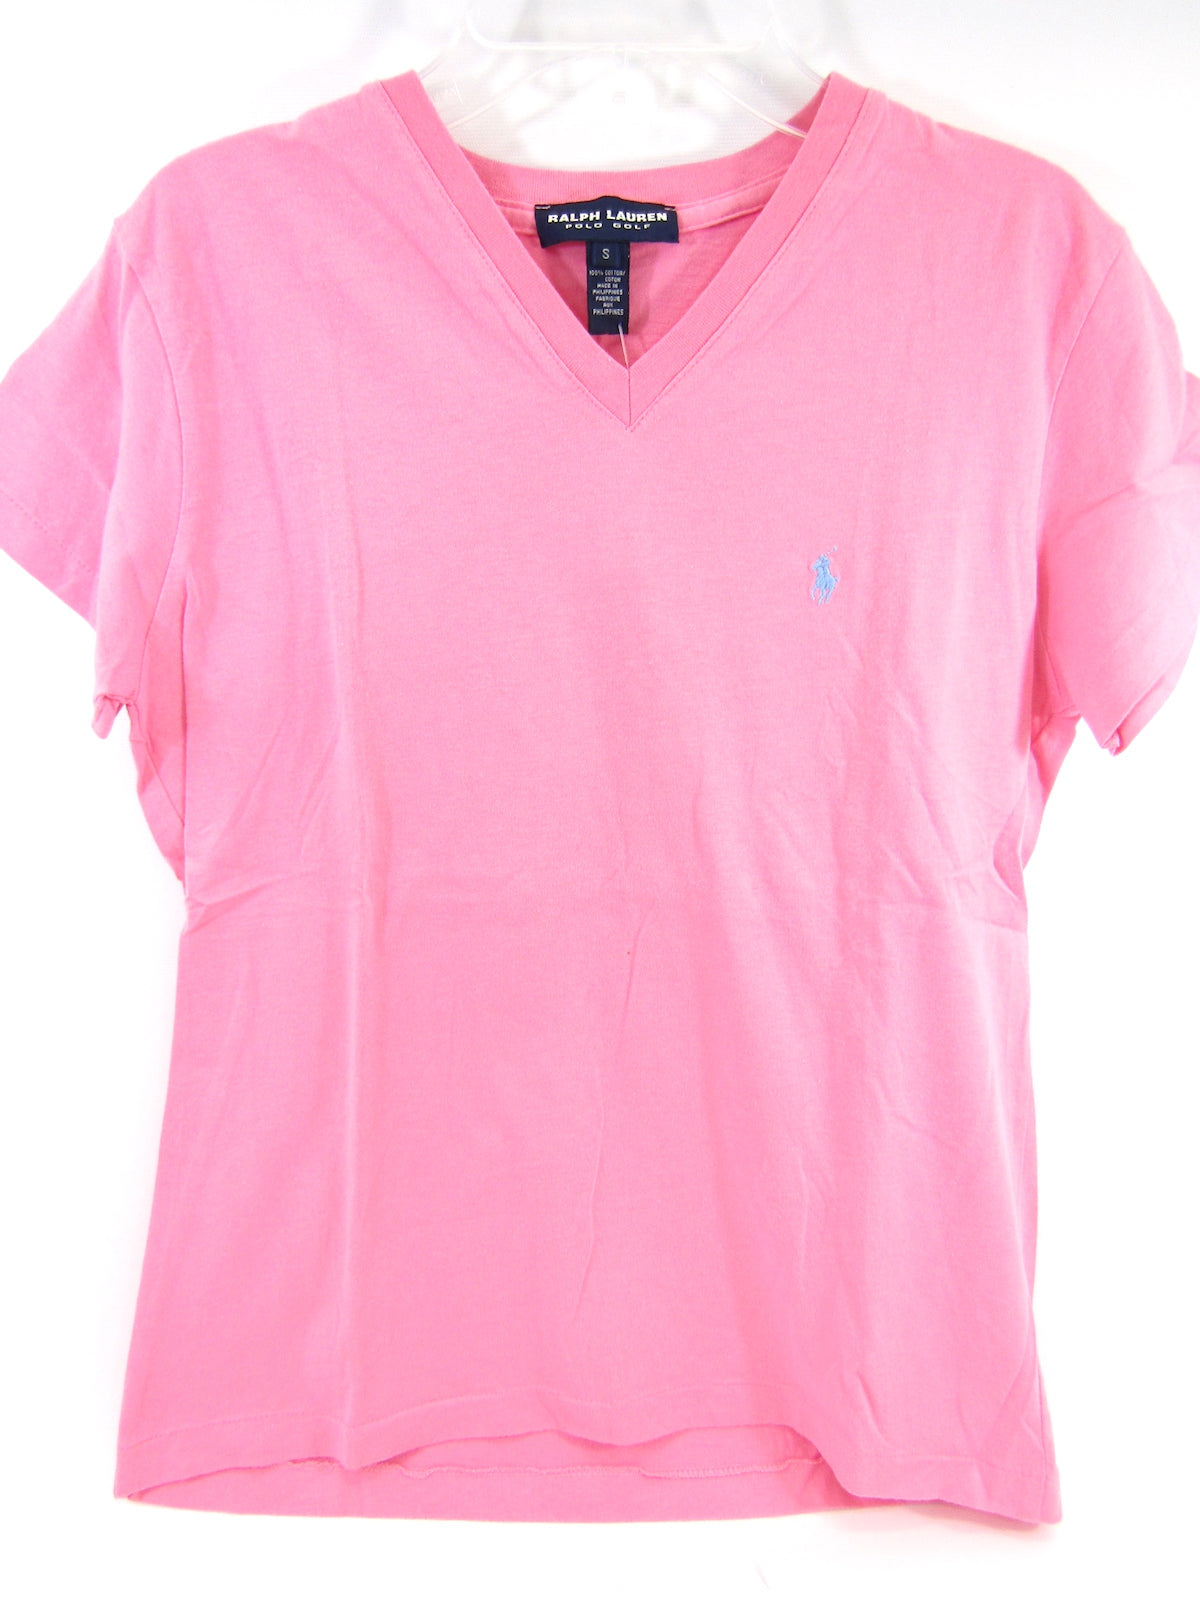 pink ralph lauren t shirt women's